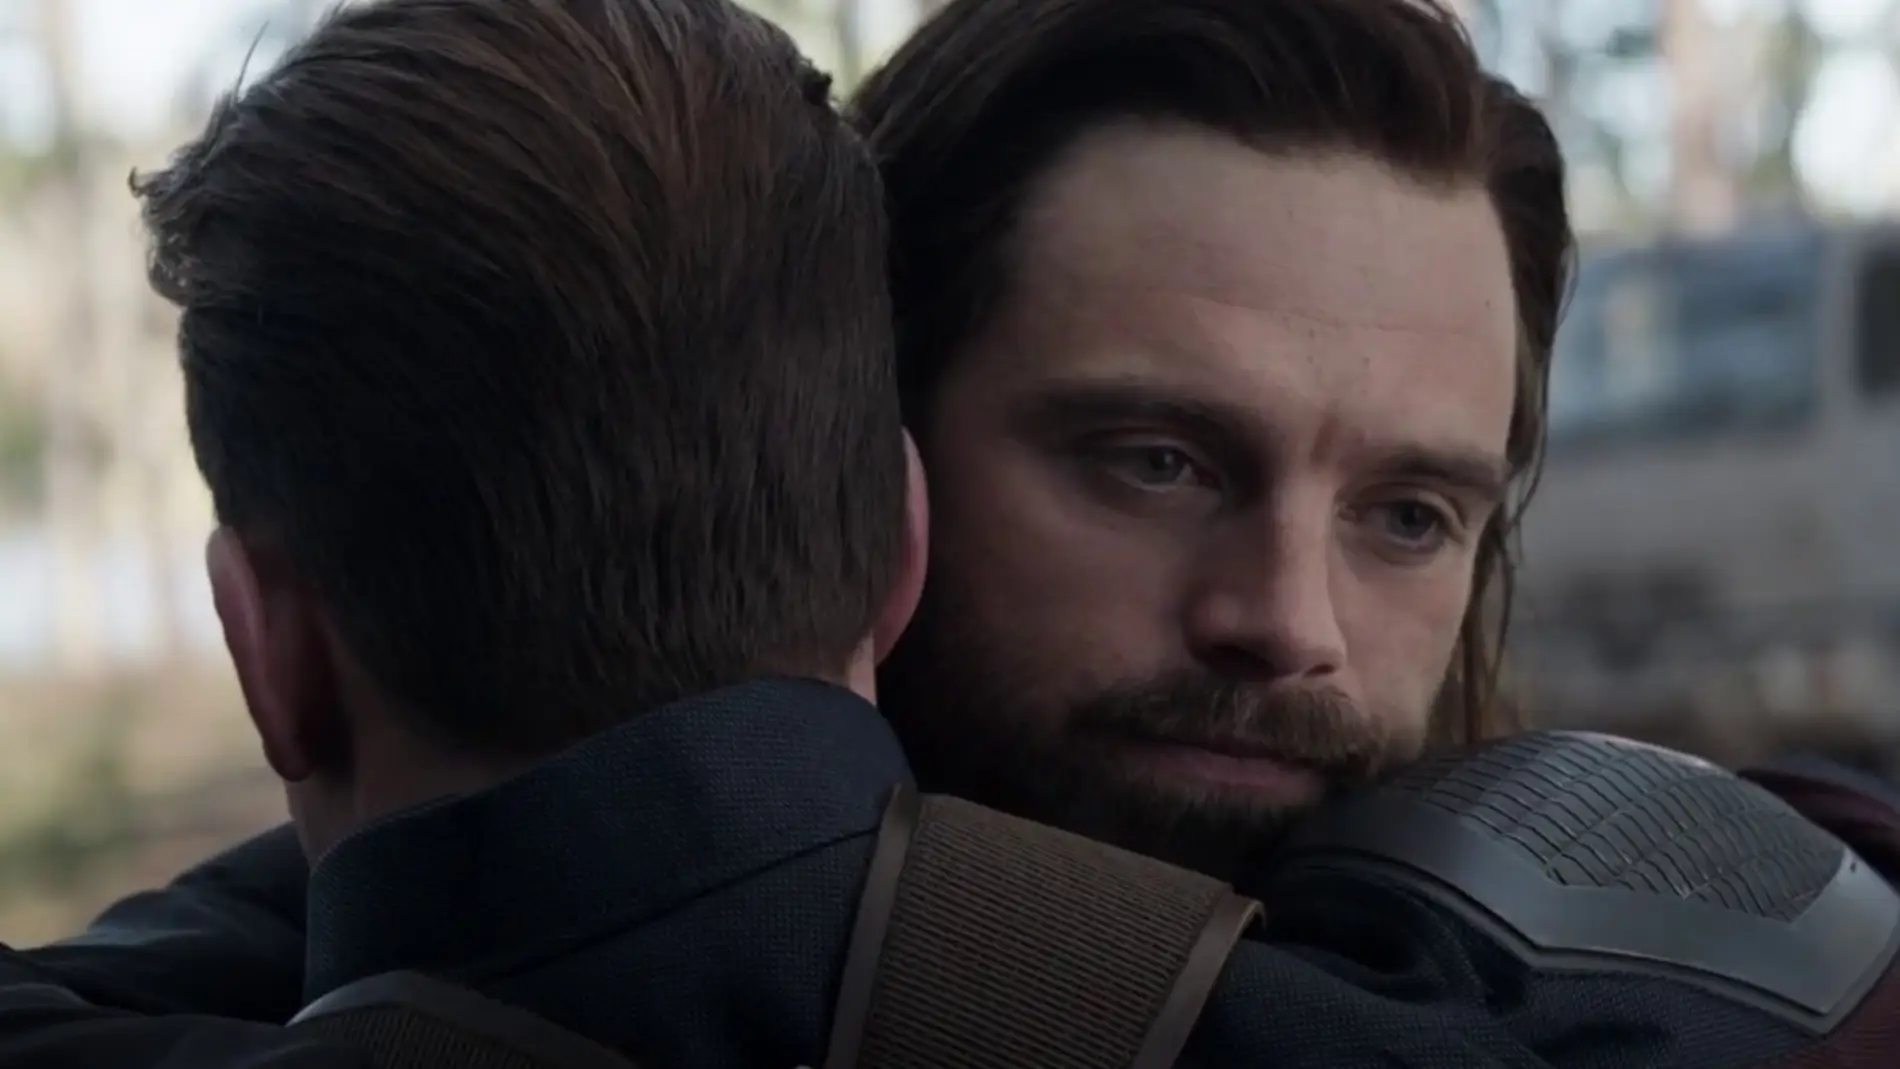 Capitán América y Bucky en 'Vengadores: Endgame'